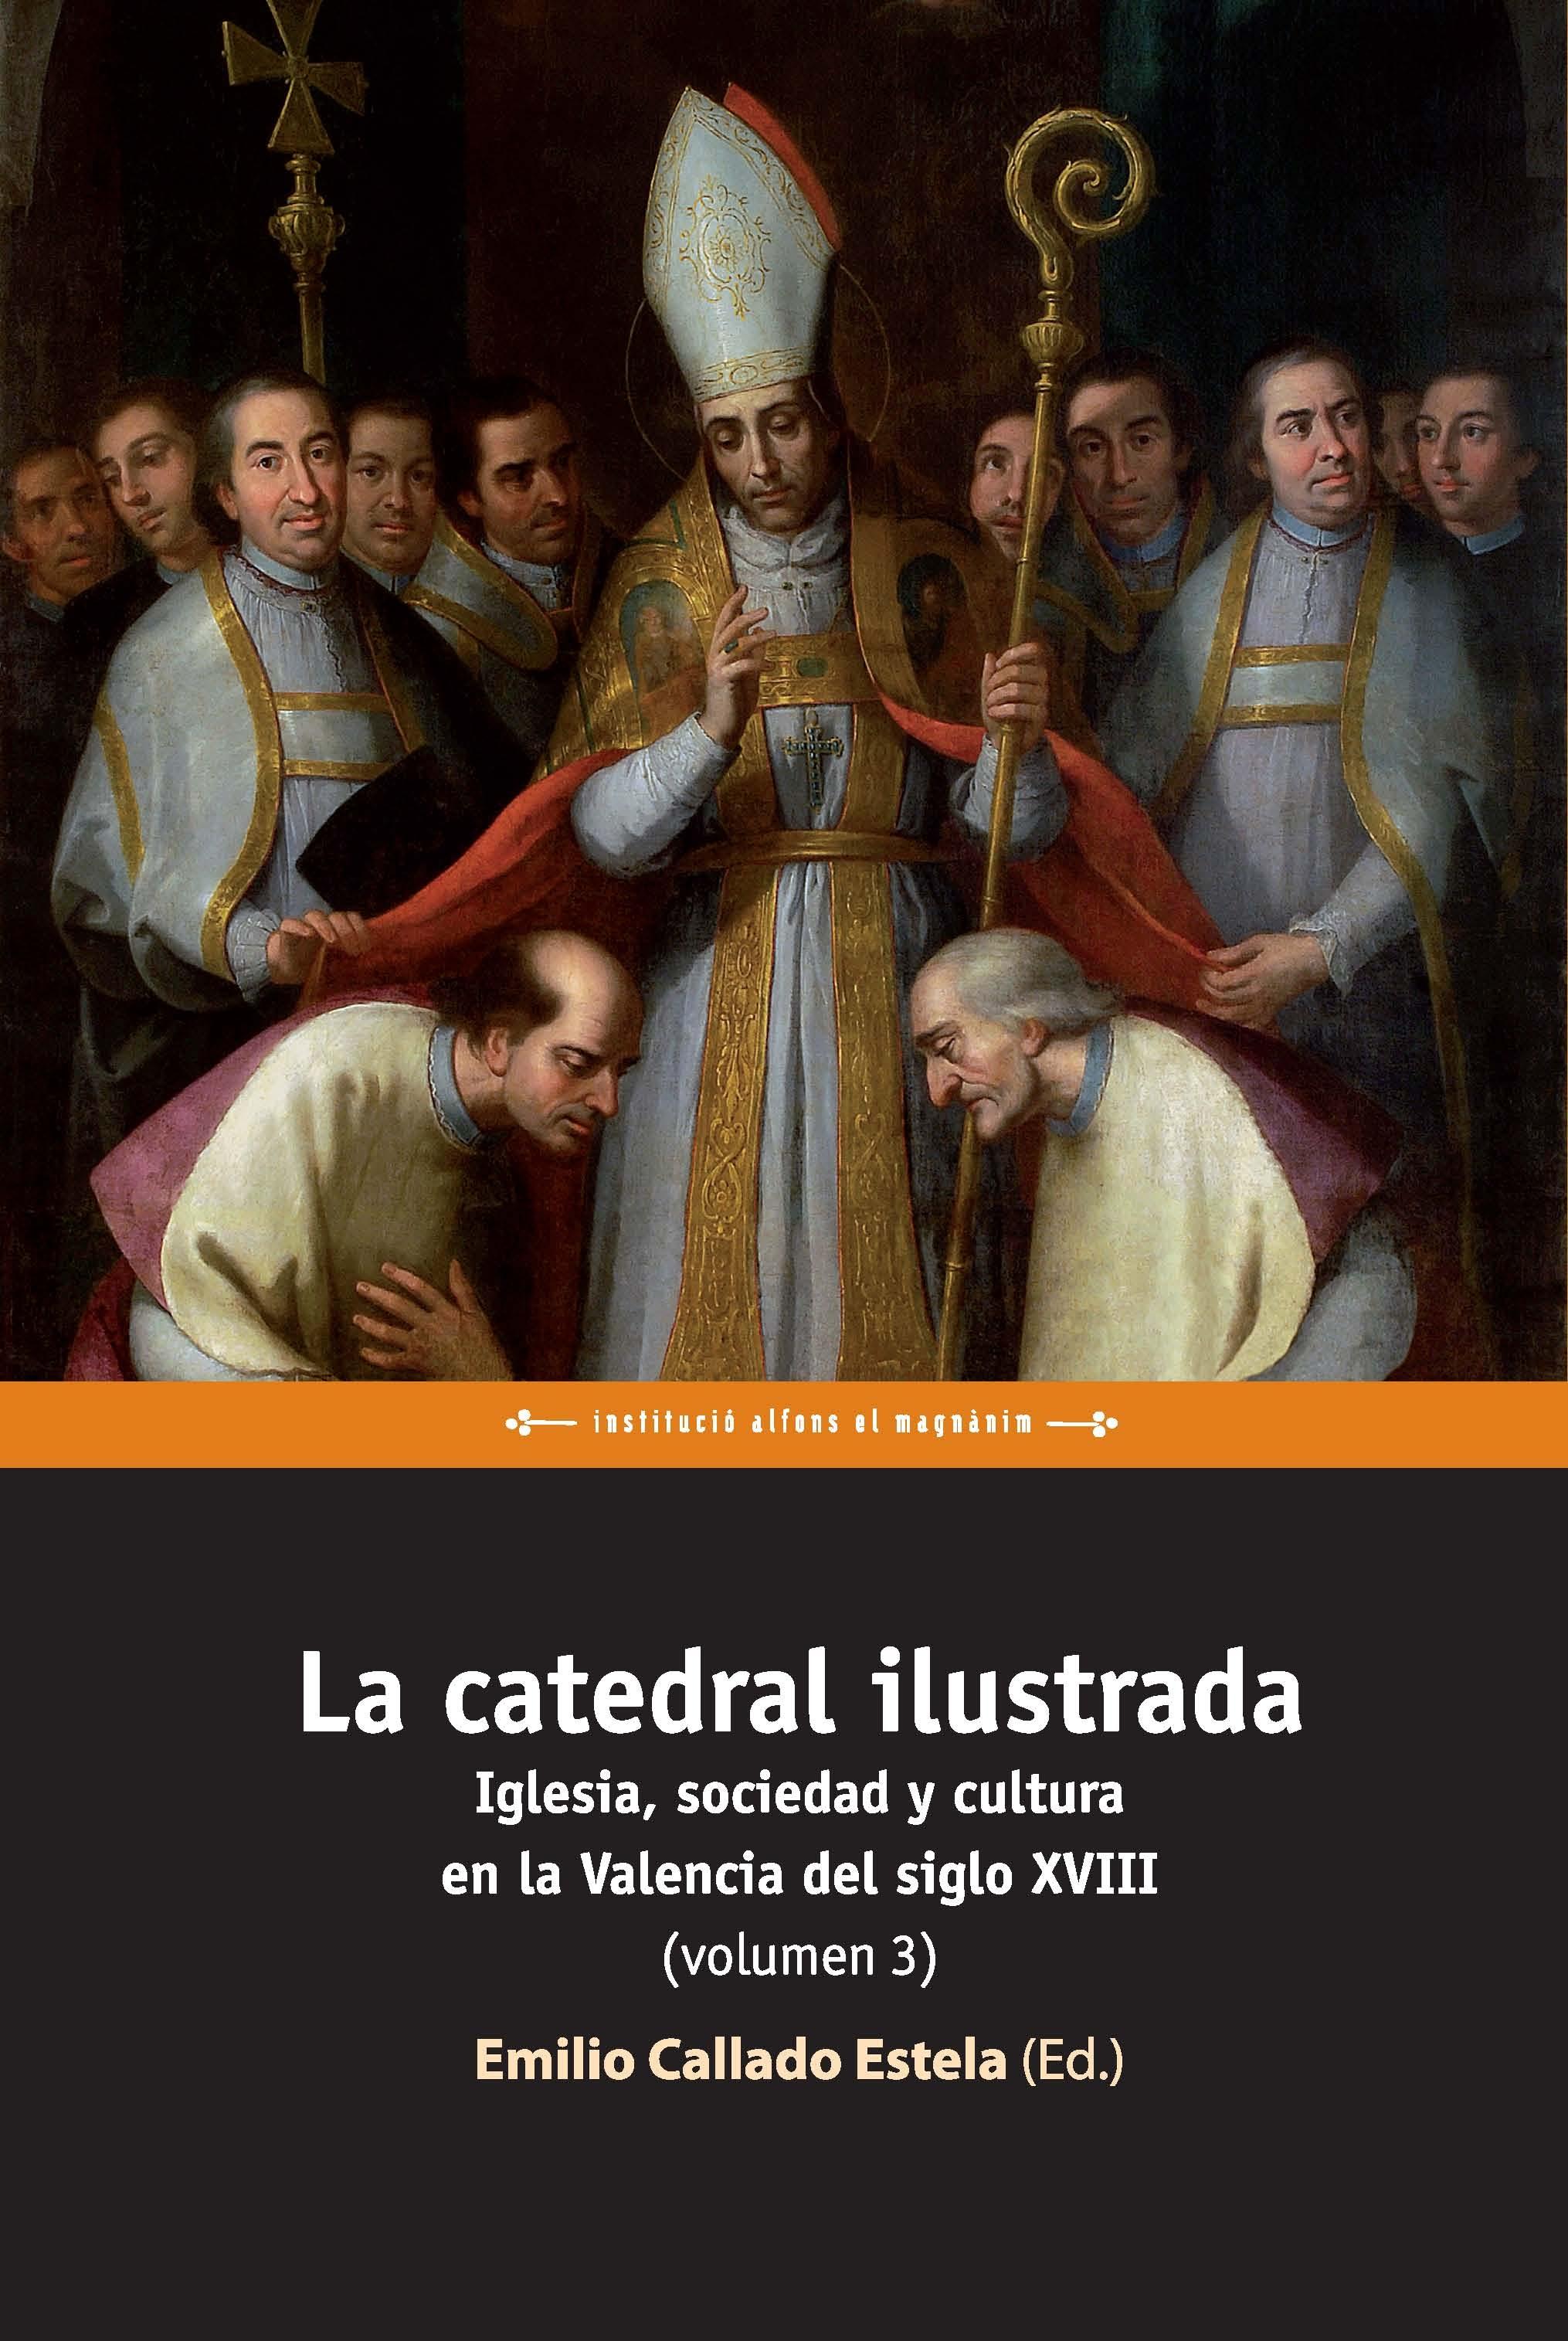 La catedral ilustrada: Iglesia, sociedad y cultura en la Valencia del siglo XVIII (Vol 3). 